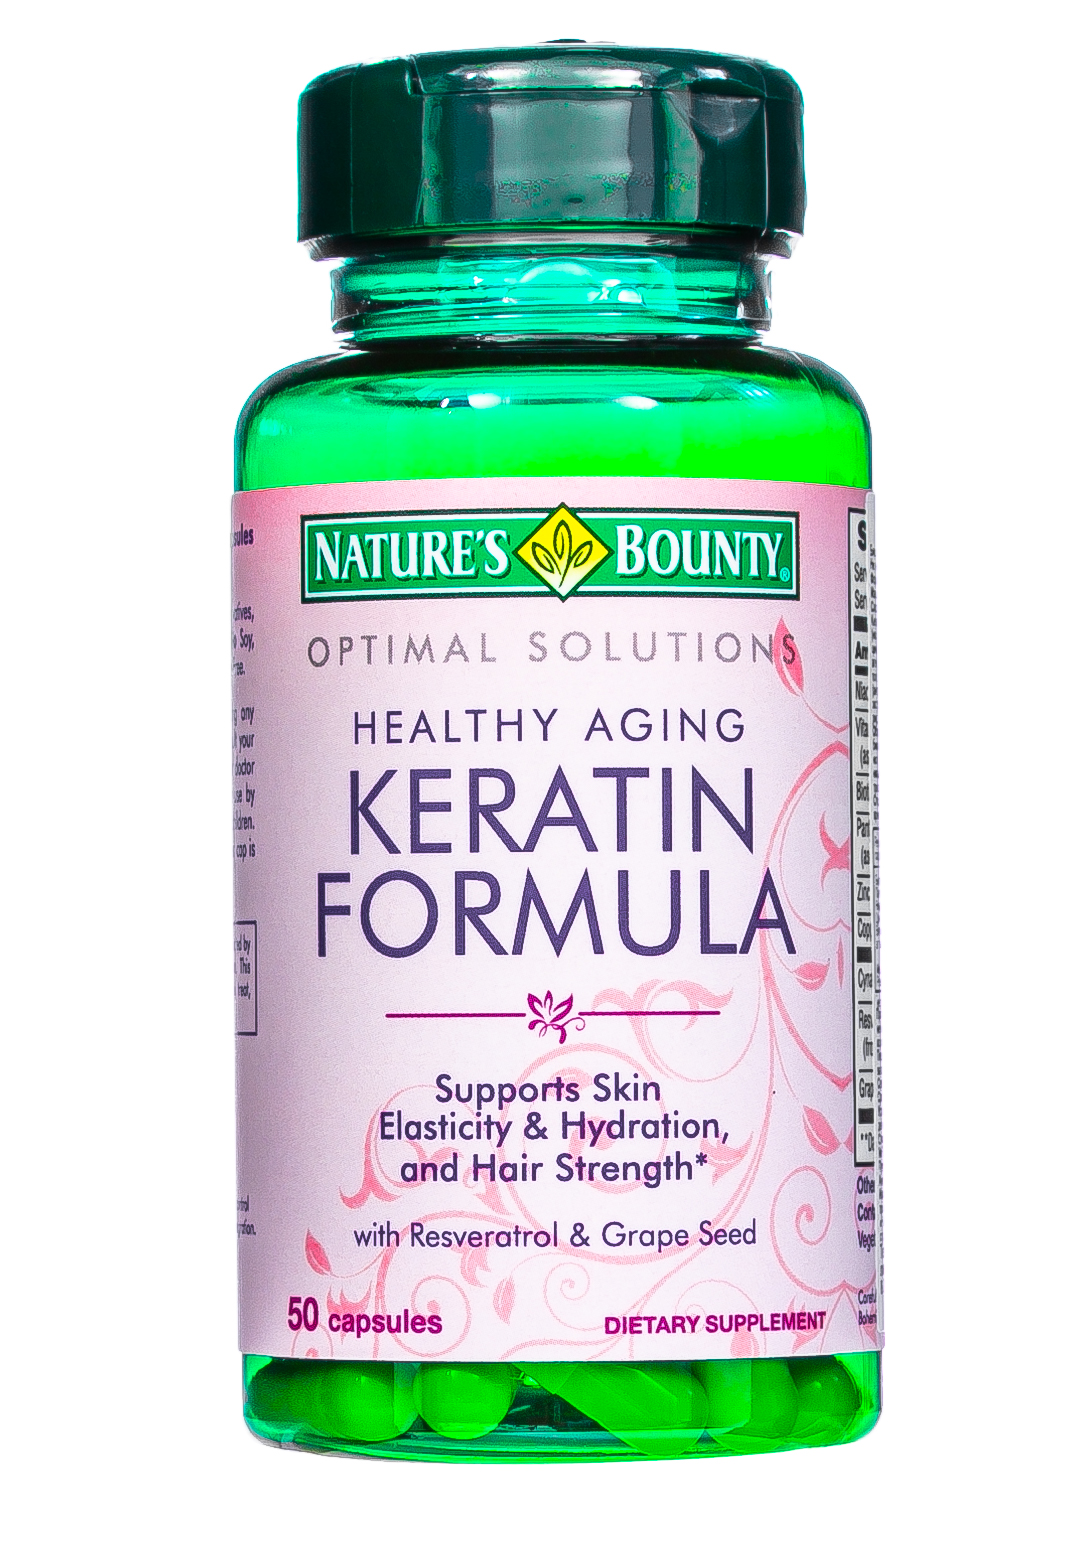 Nature's Bounty Кератин формула 50 капсул (Nature's Bounty, Специальные продукты)